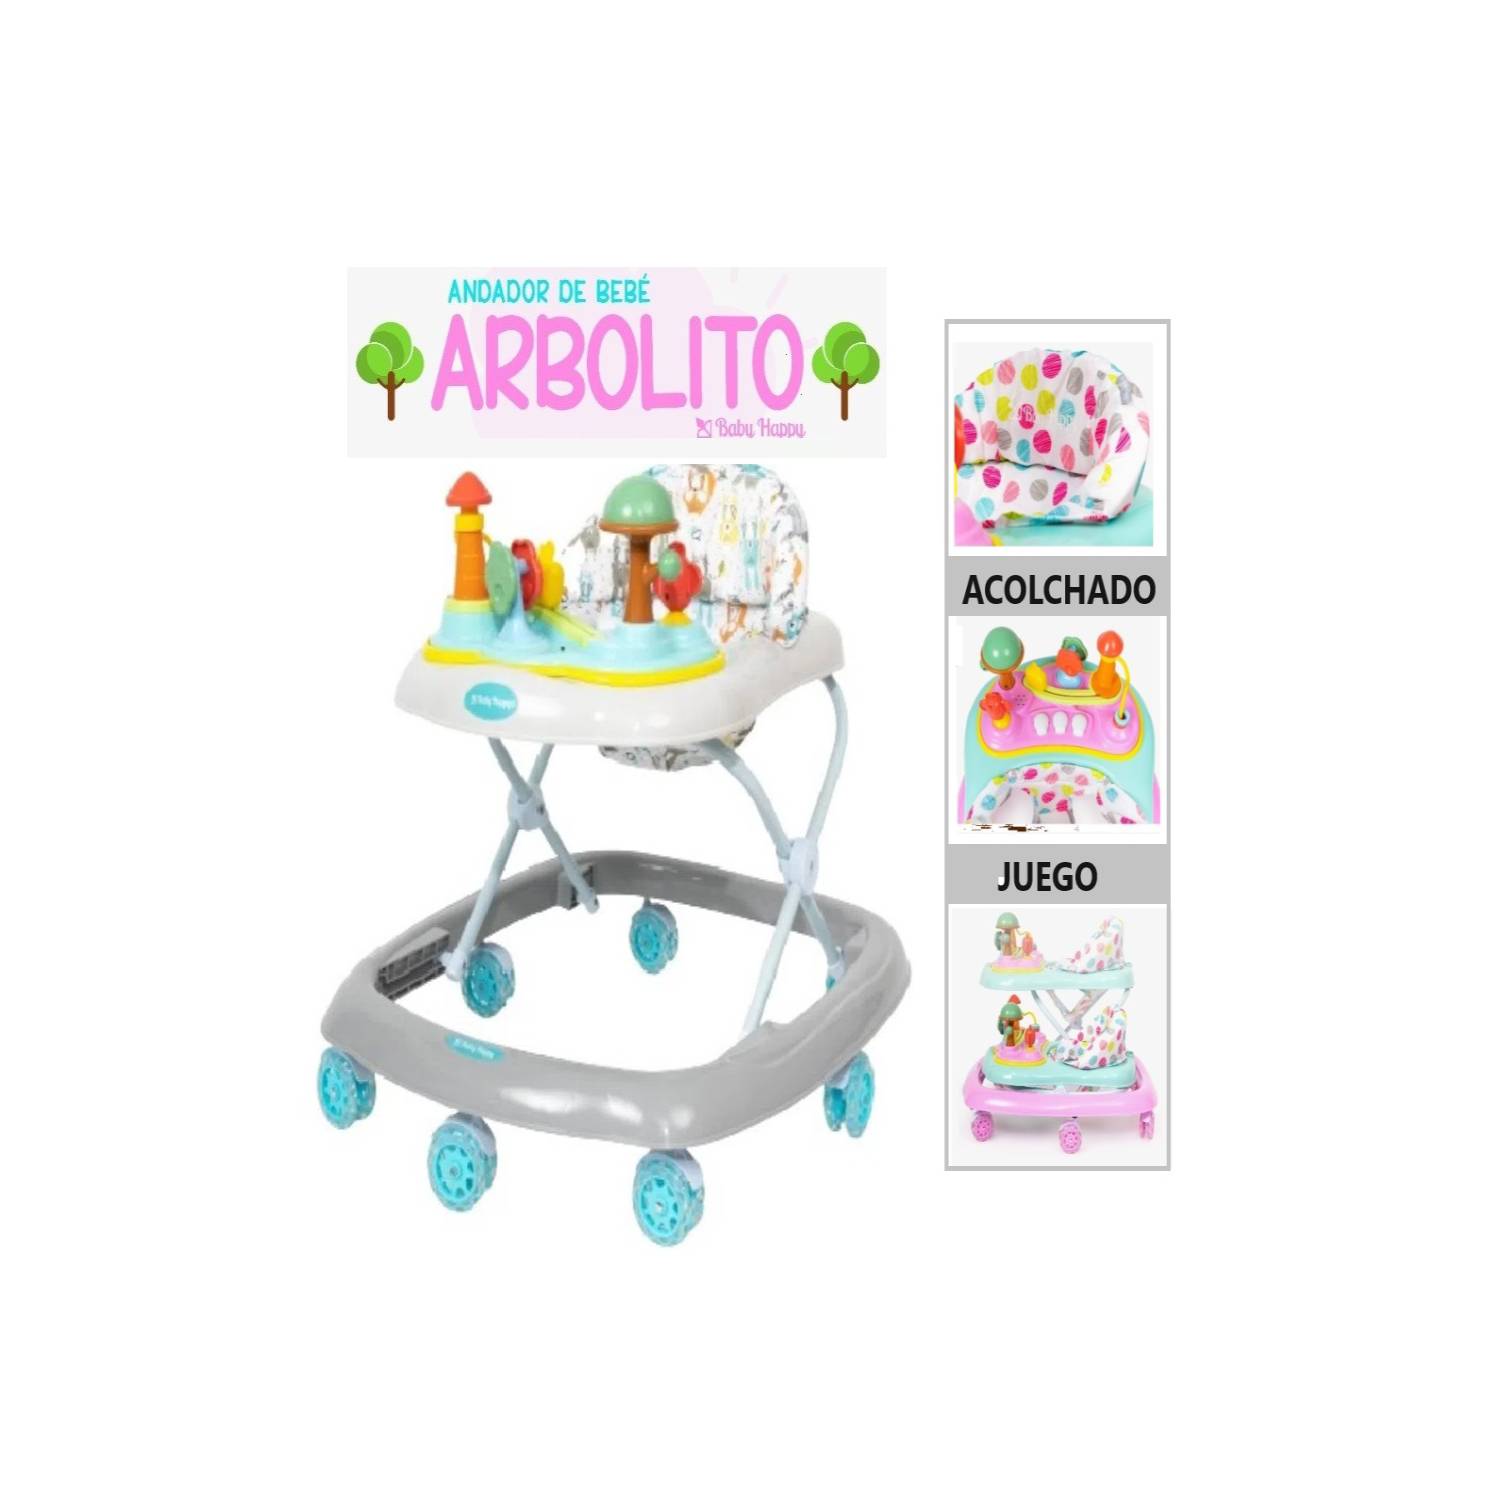 Andador para Bebe Musical Baby Happy Arbolito